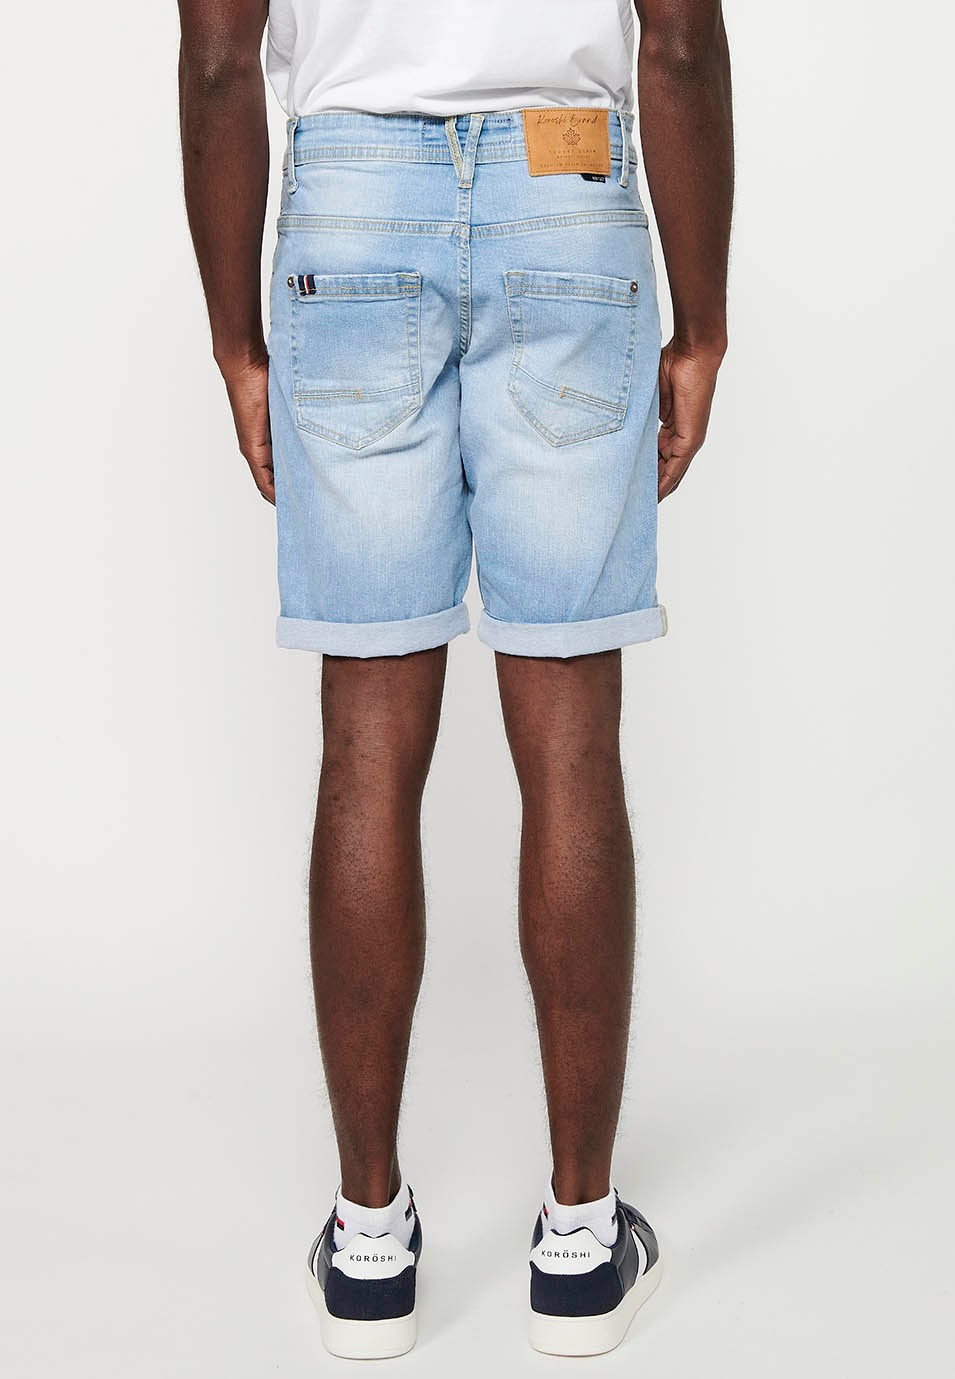 Bermuda en jean Strecth Regular Fit, couleur bleu pour homme